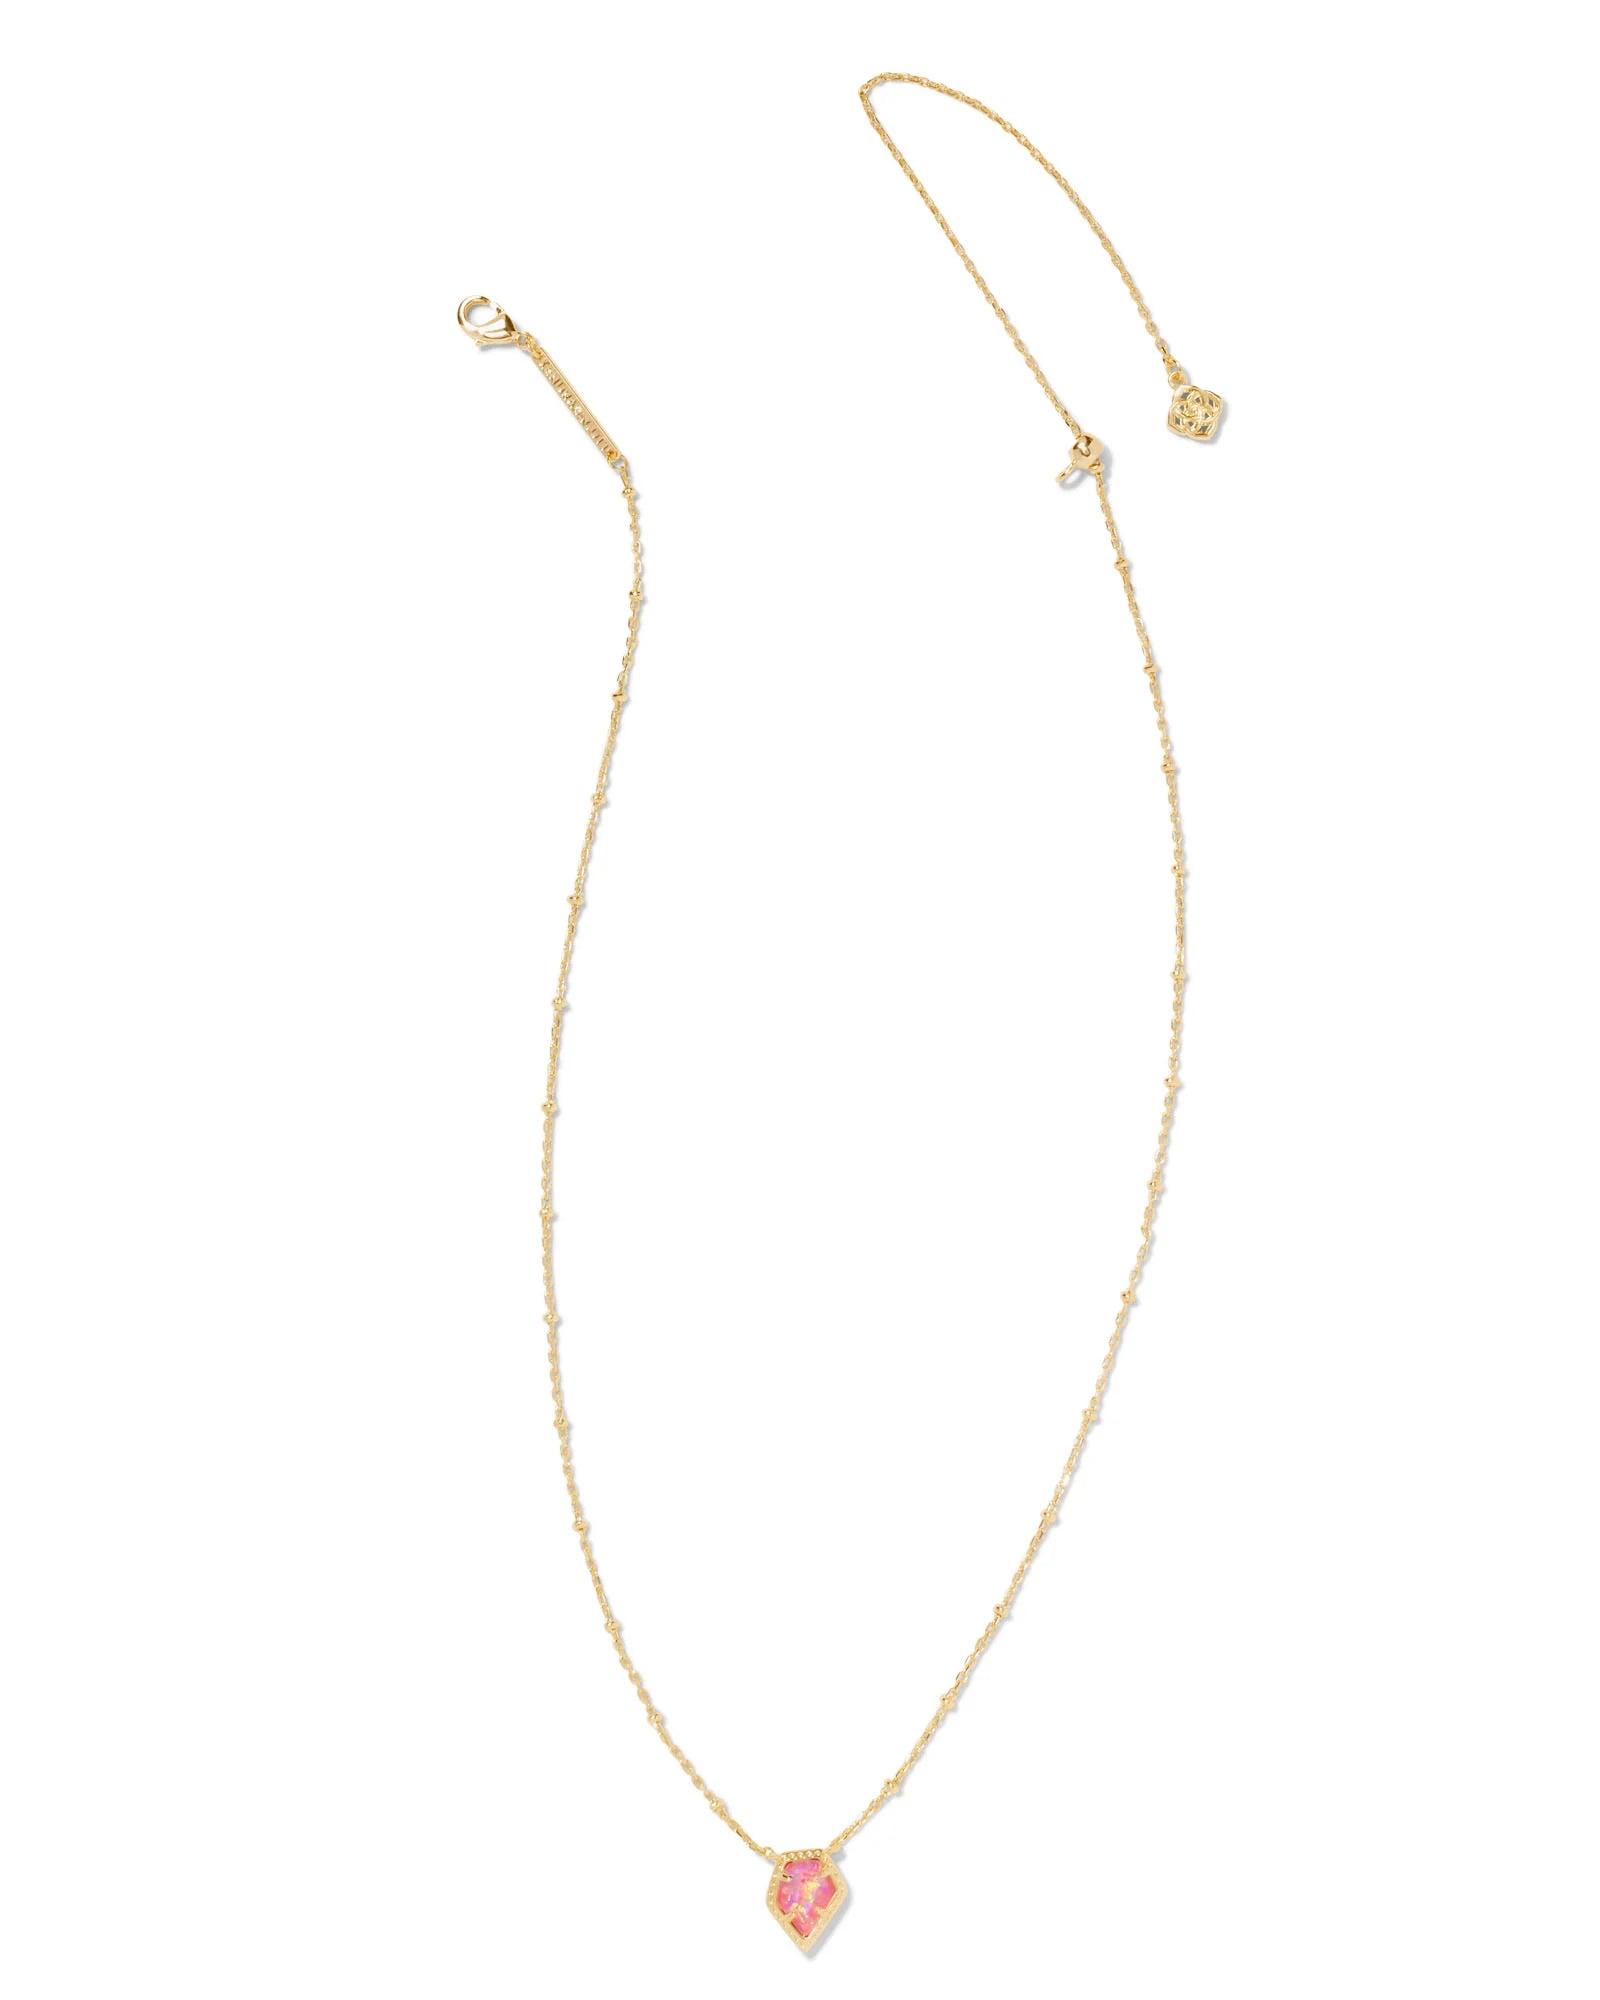 Framed Tess Satellite Short Pendant Necklace Gold  Luster Rose Pink Kyocera Opal